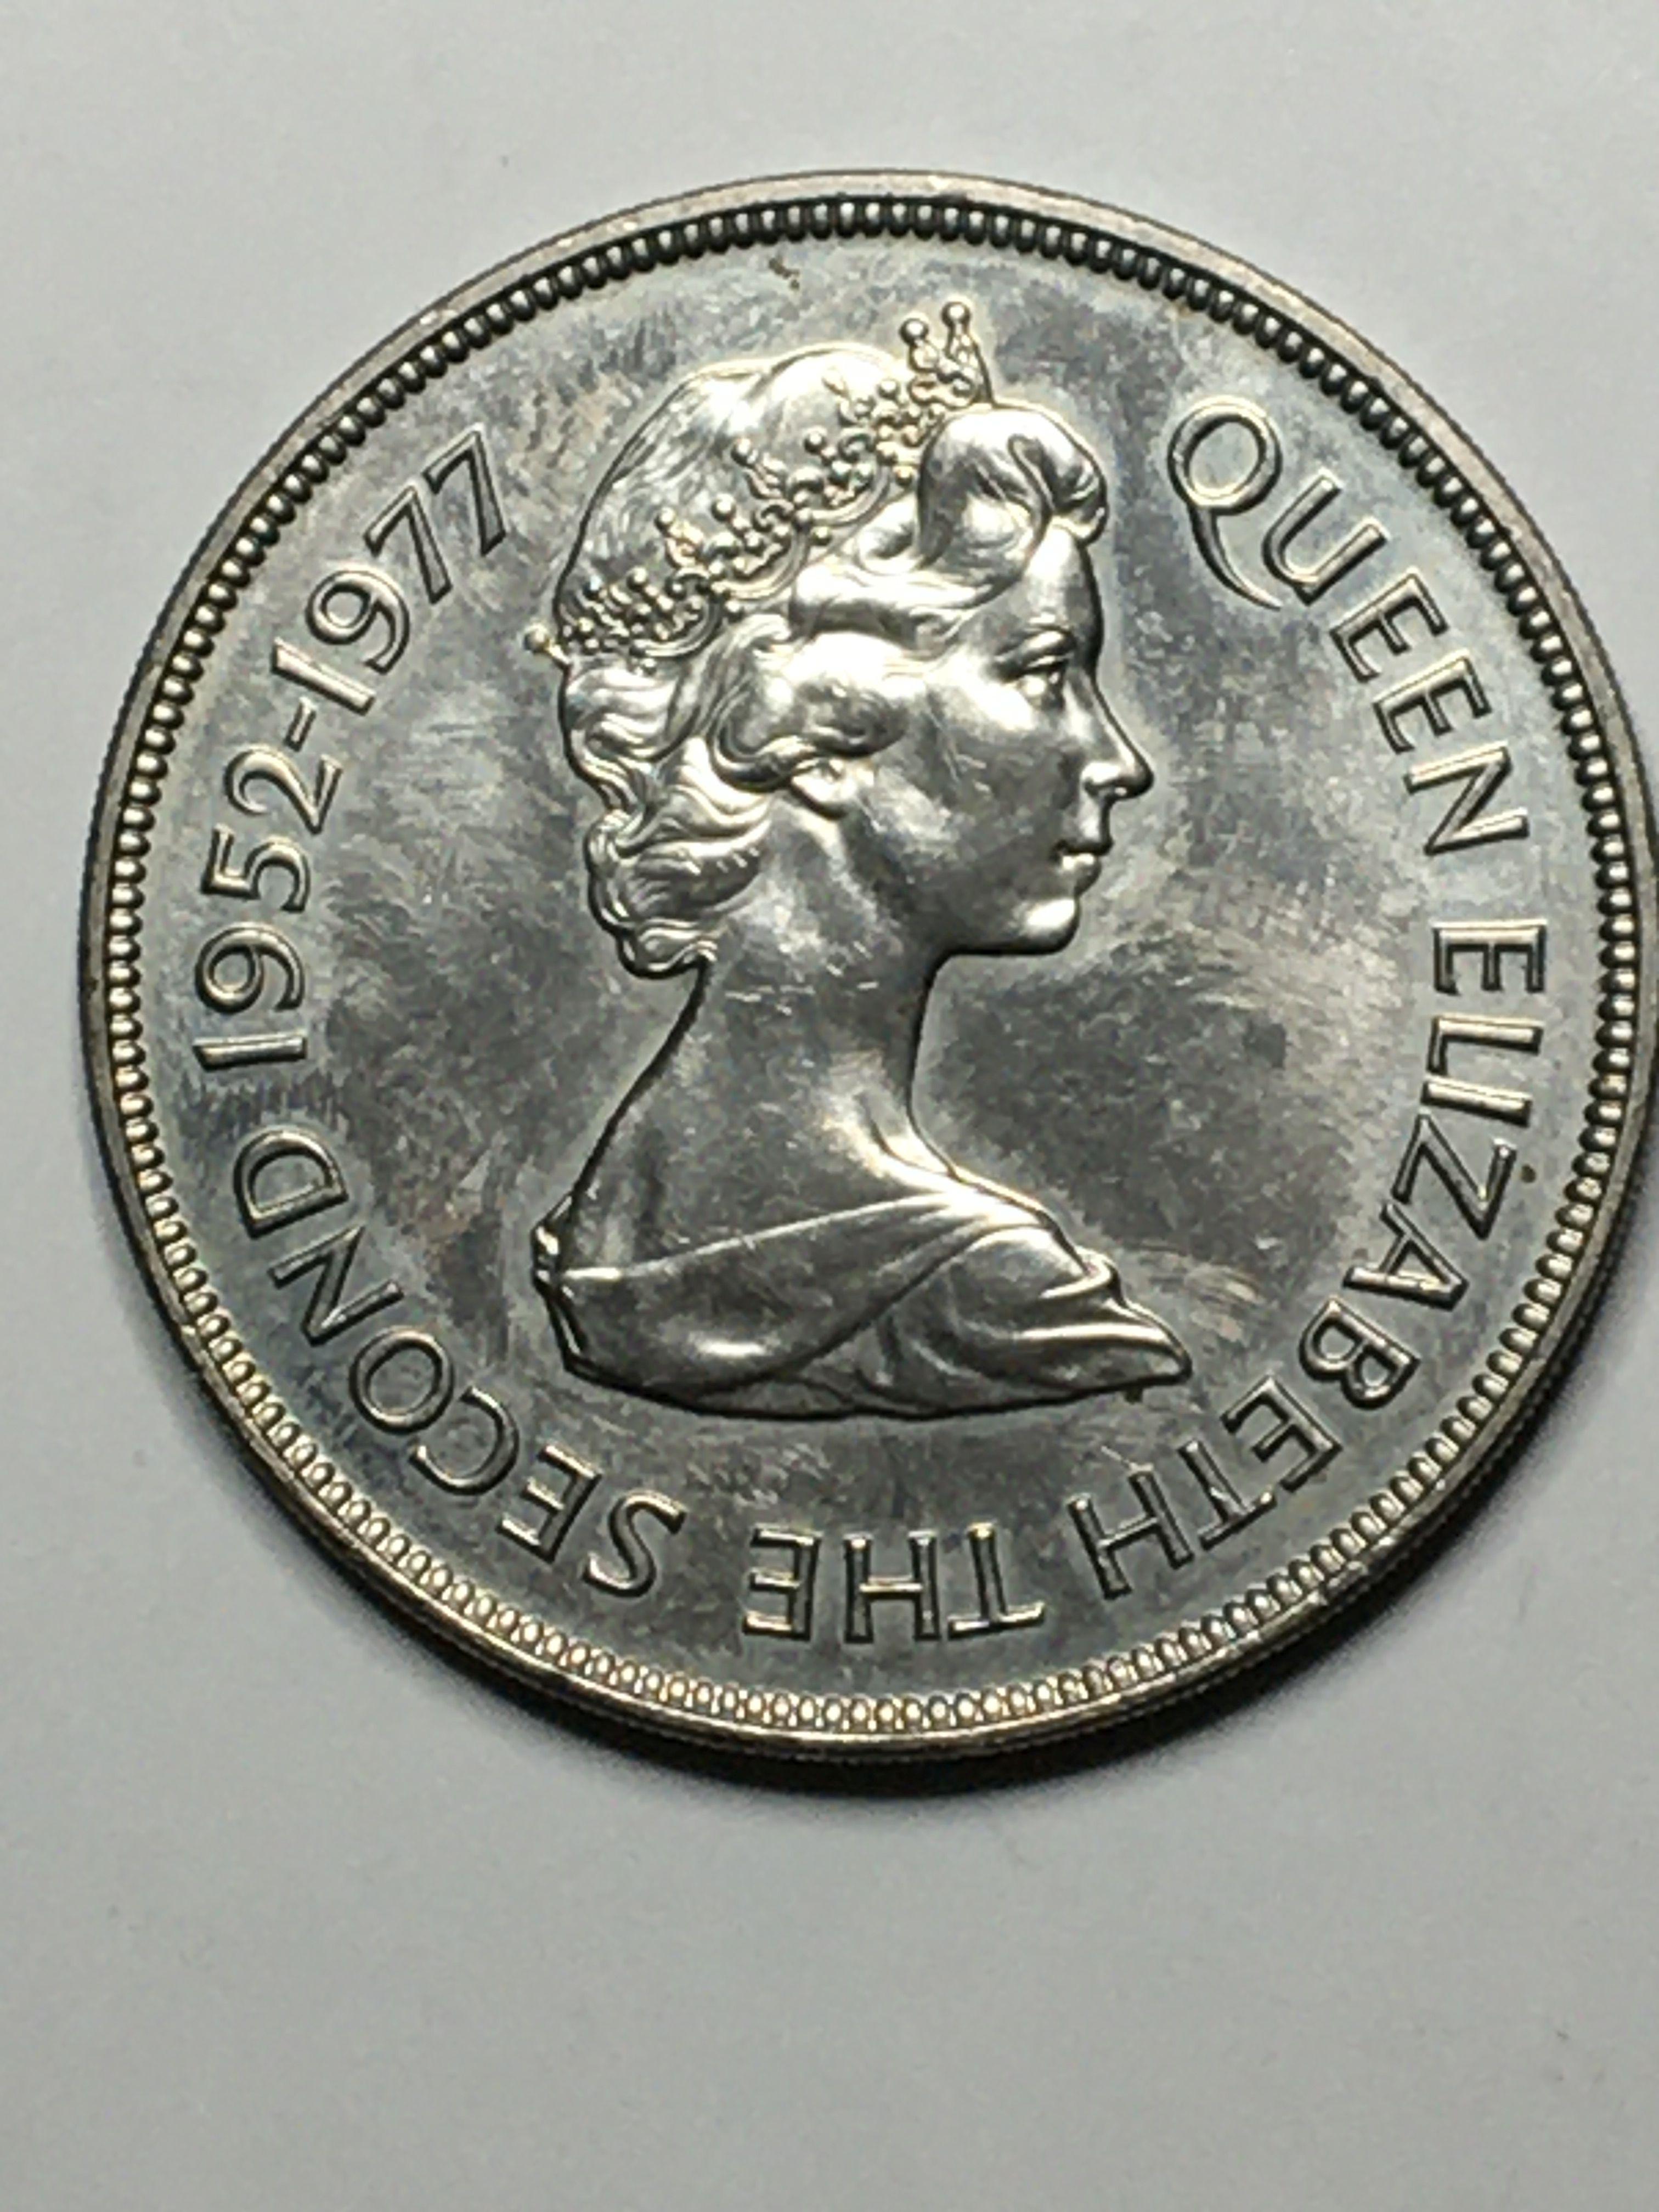 Queen Elizabeth II Bailiwick Of Guernsey 25 Pence